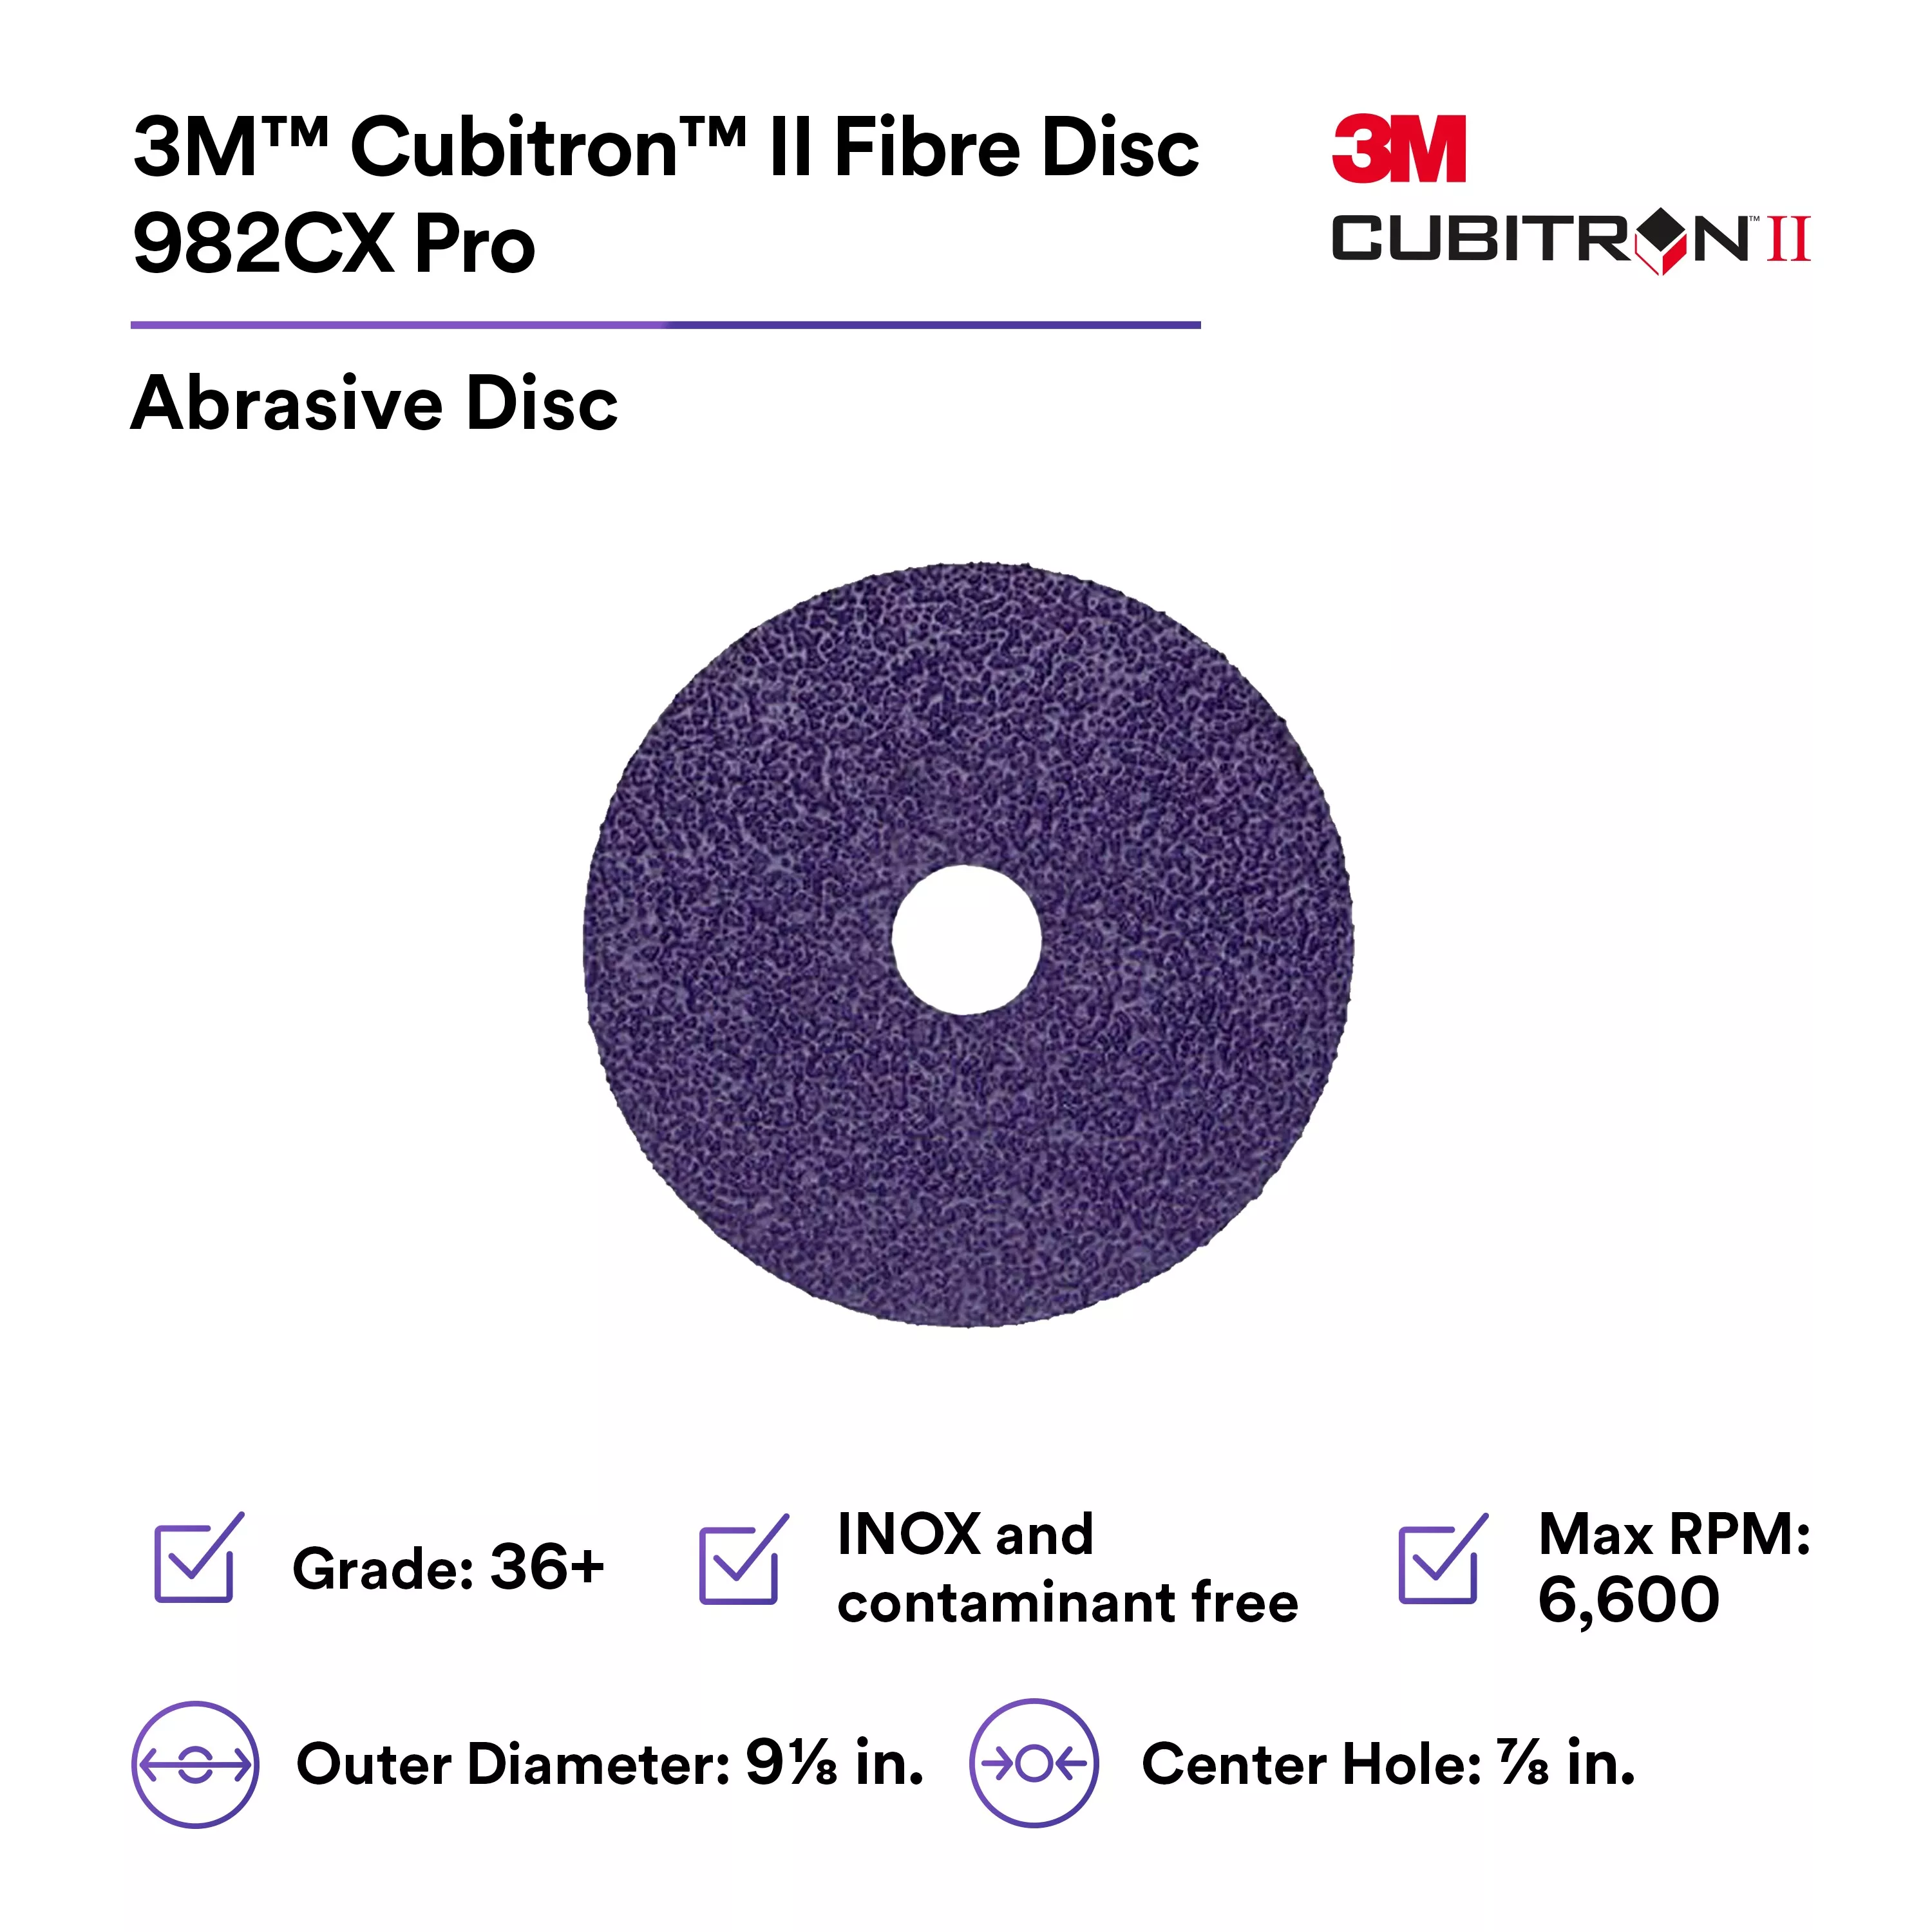 SKU 7100243137 | 3M™ Cubitron™ II Fibre Disc 982CX Pro